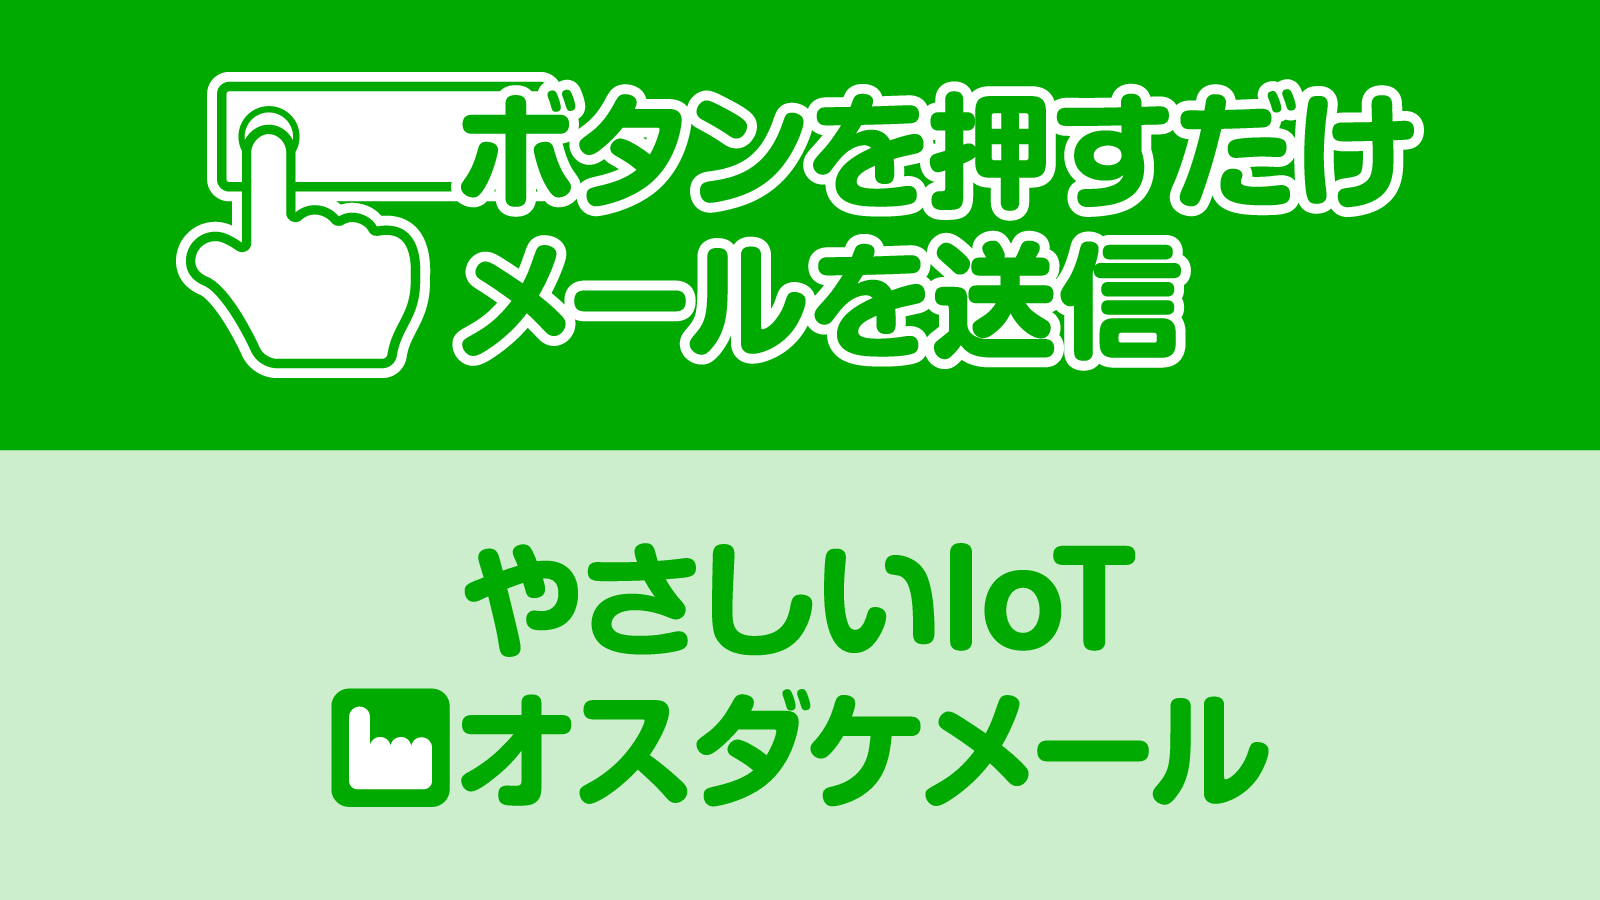 鉄 バス 表 地 時刻 十和田観光電鉄 乗合時刻表